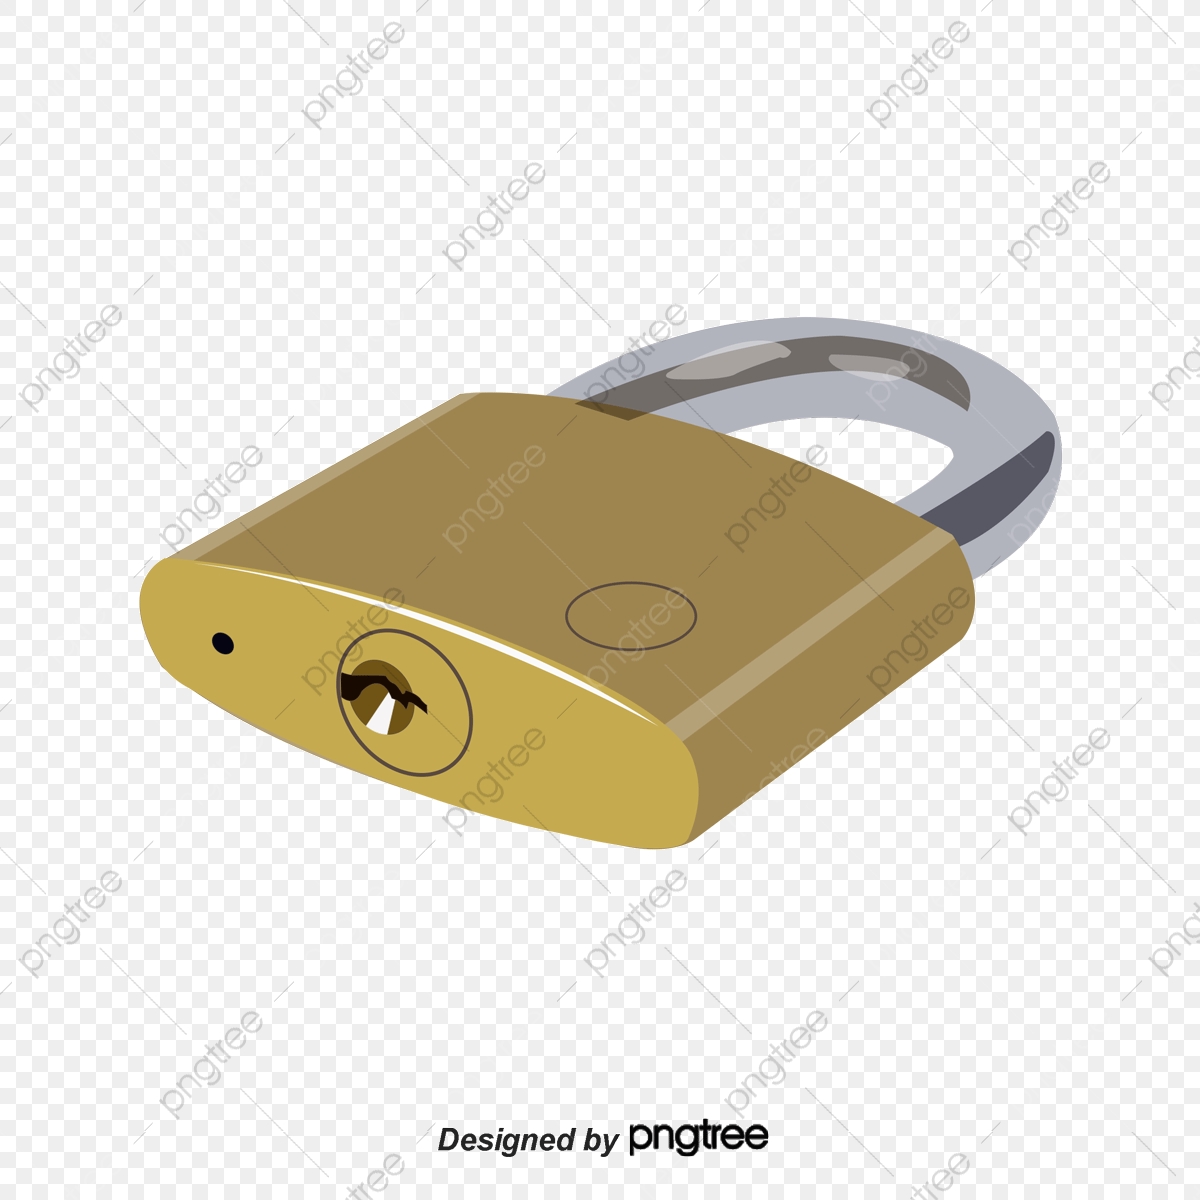 padlock clipart golden